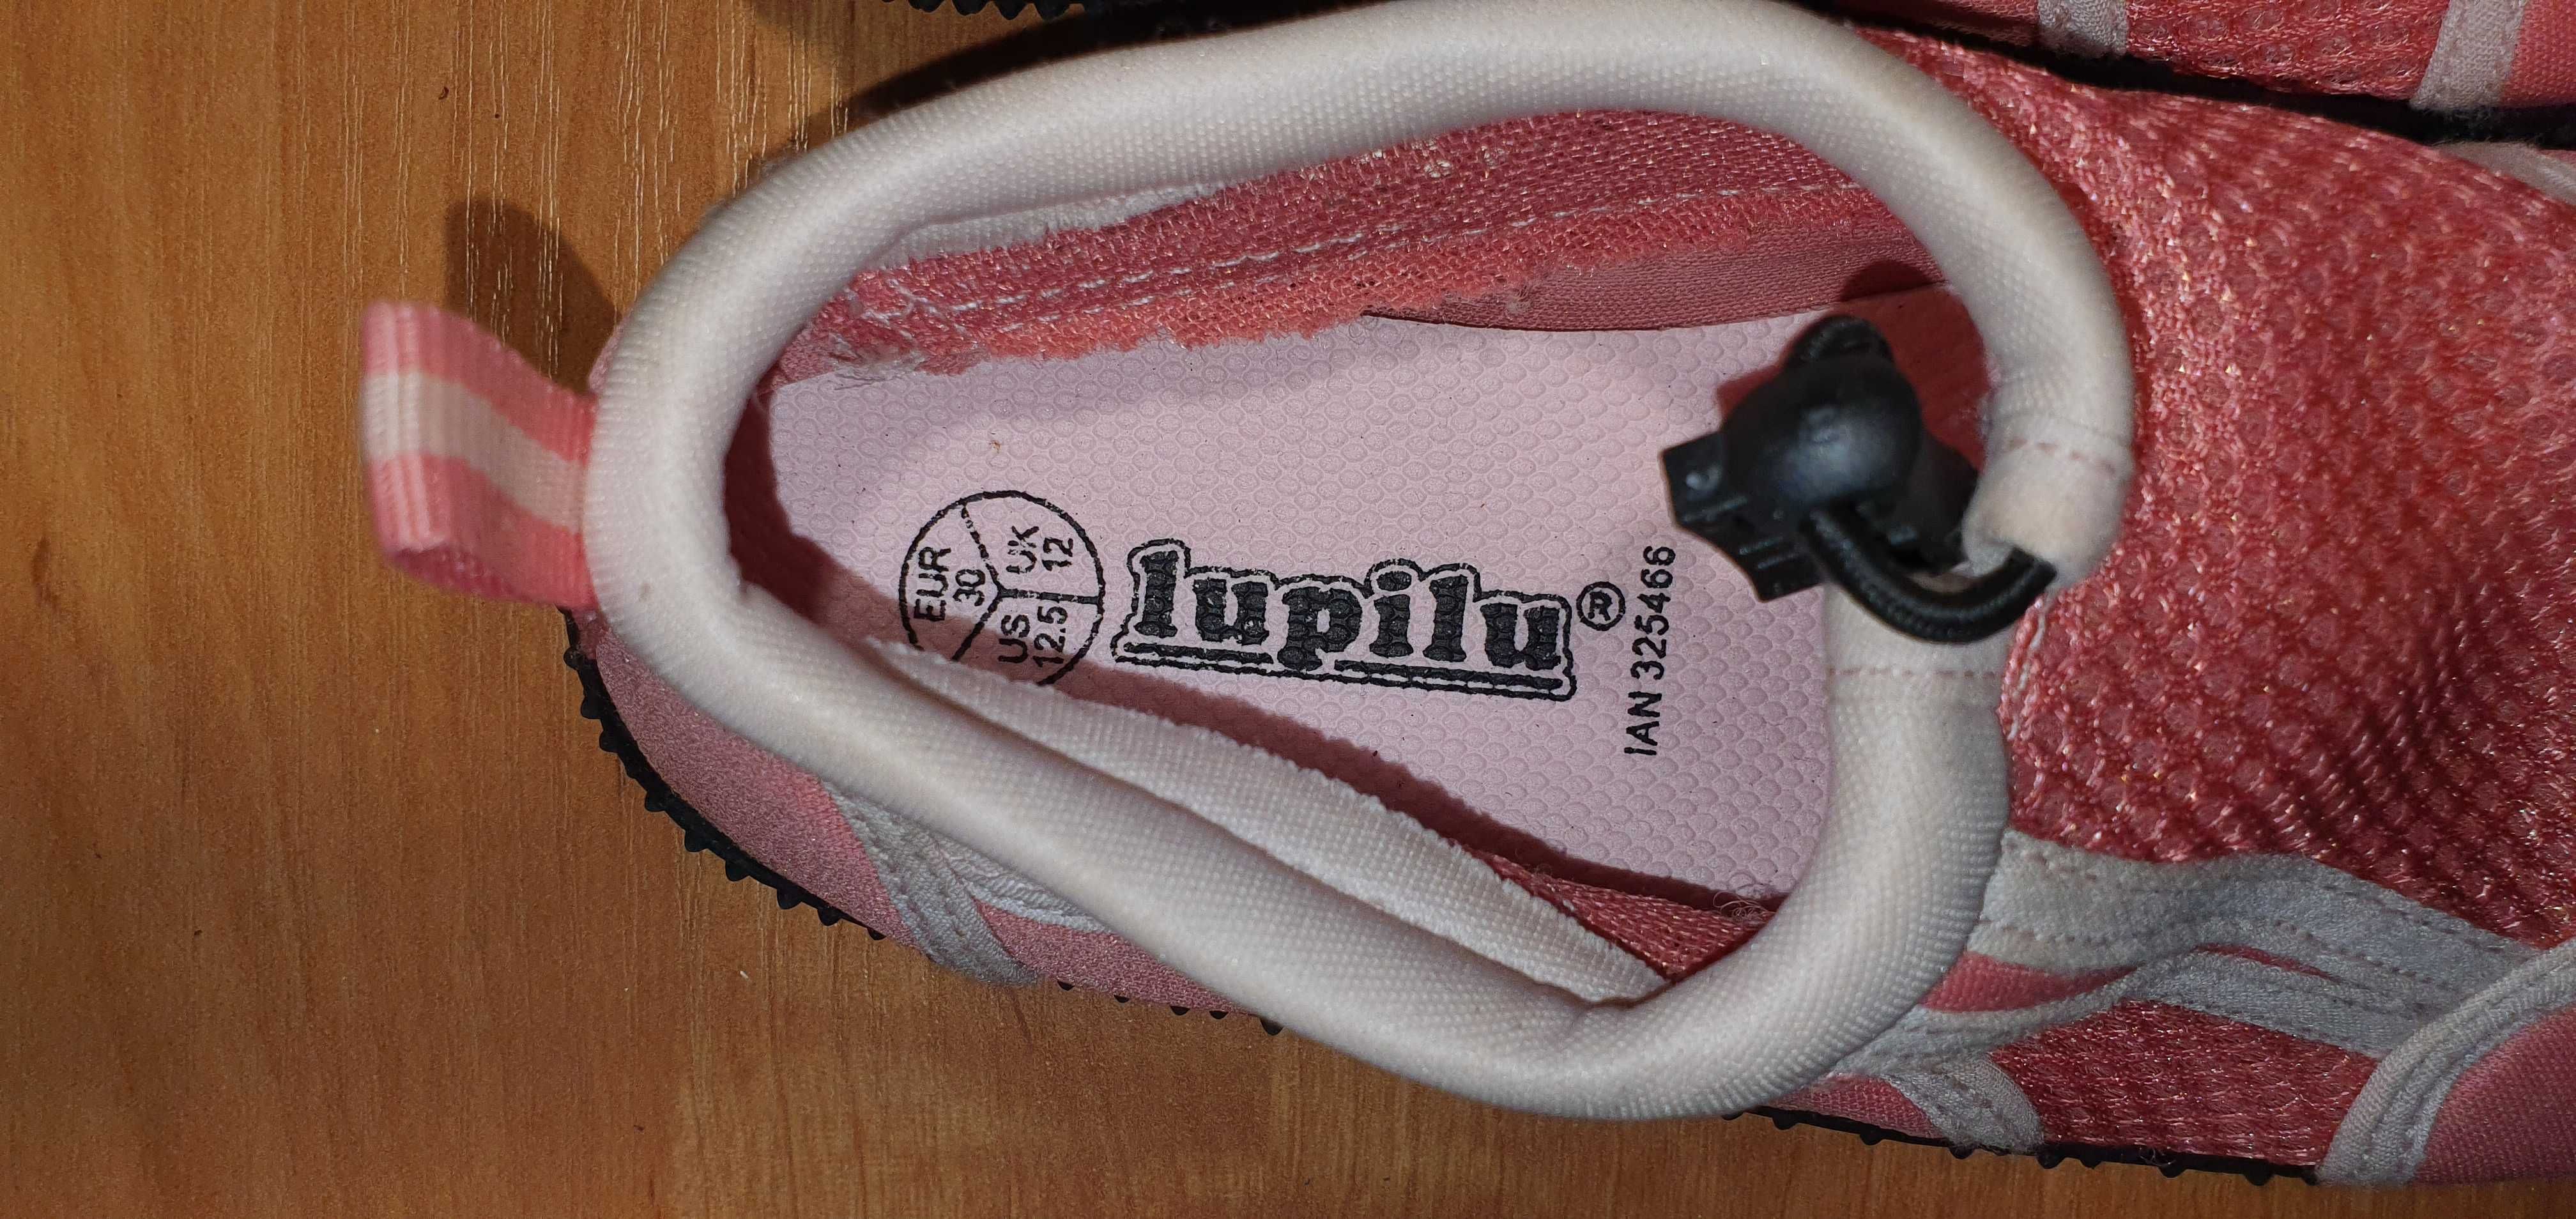 Dziecięce buty do wody LUPILU, rozm. 30 (dł. wkładki 19,5 cm).